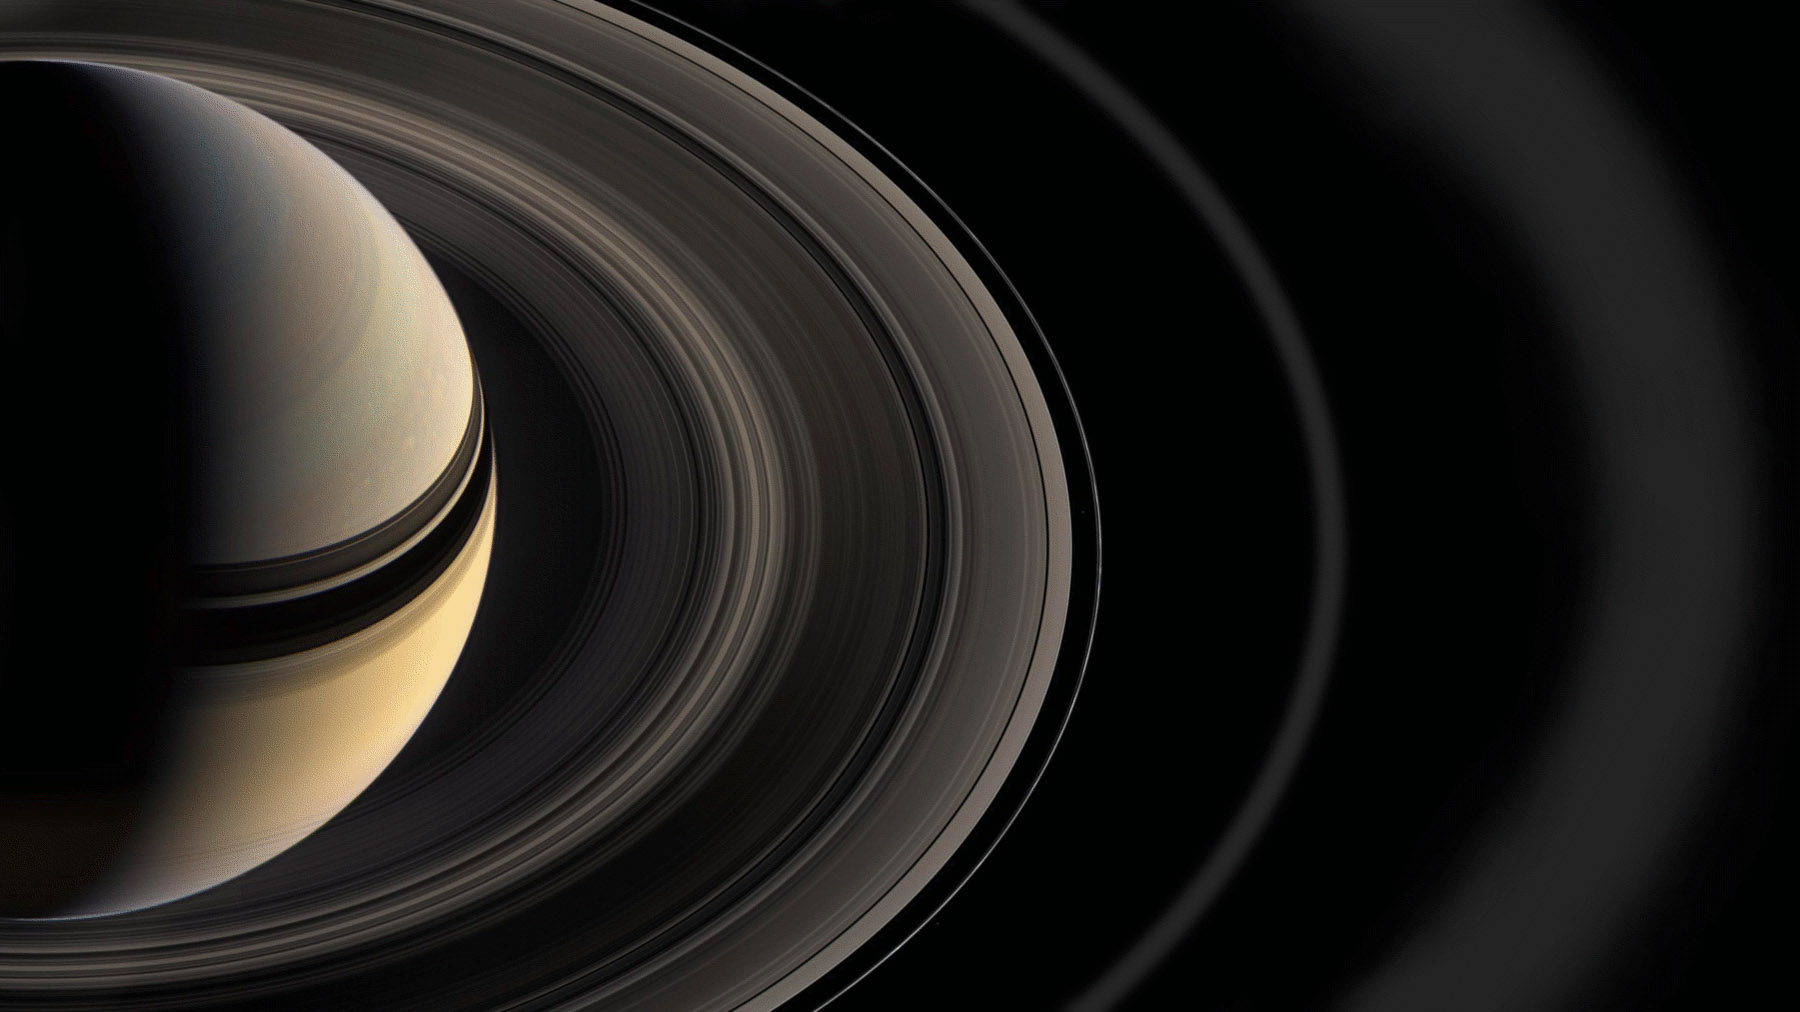 НАСА: Зонд "Кассини" изучит кольца Сатурна до окончания миссии в 2017 году